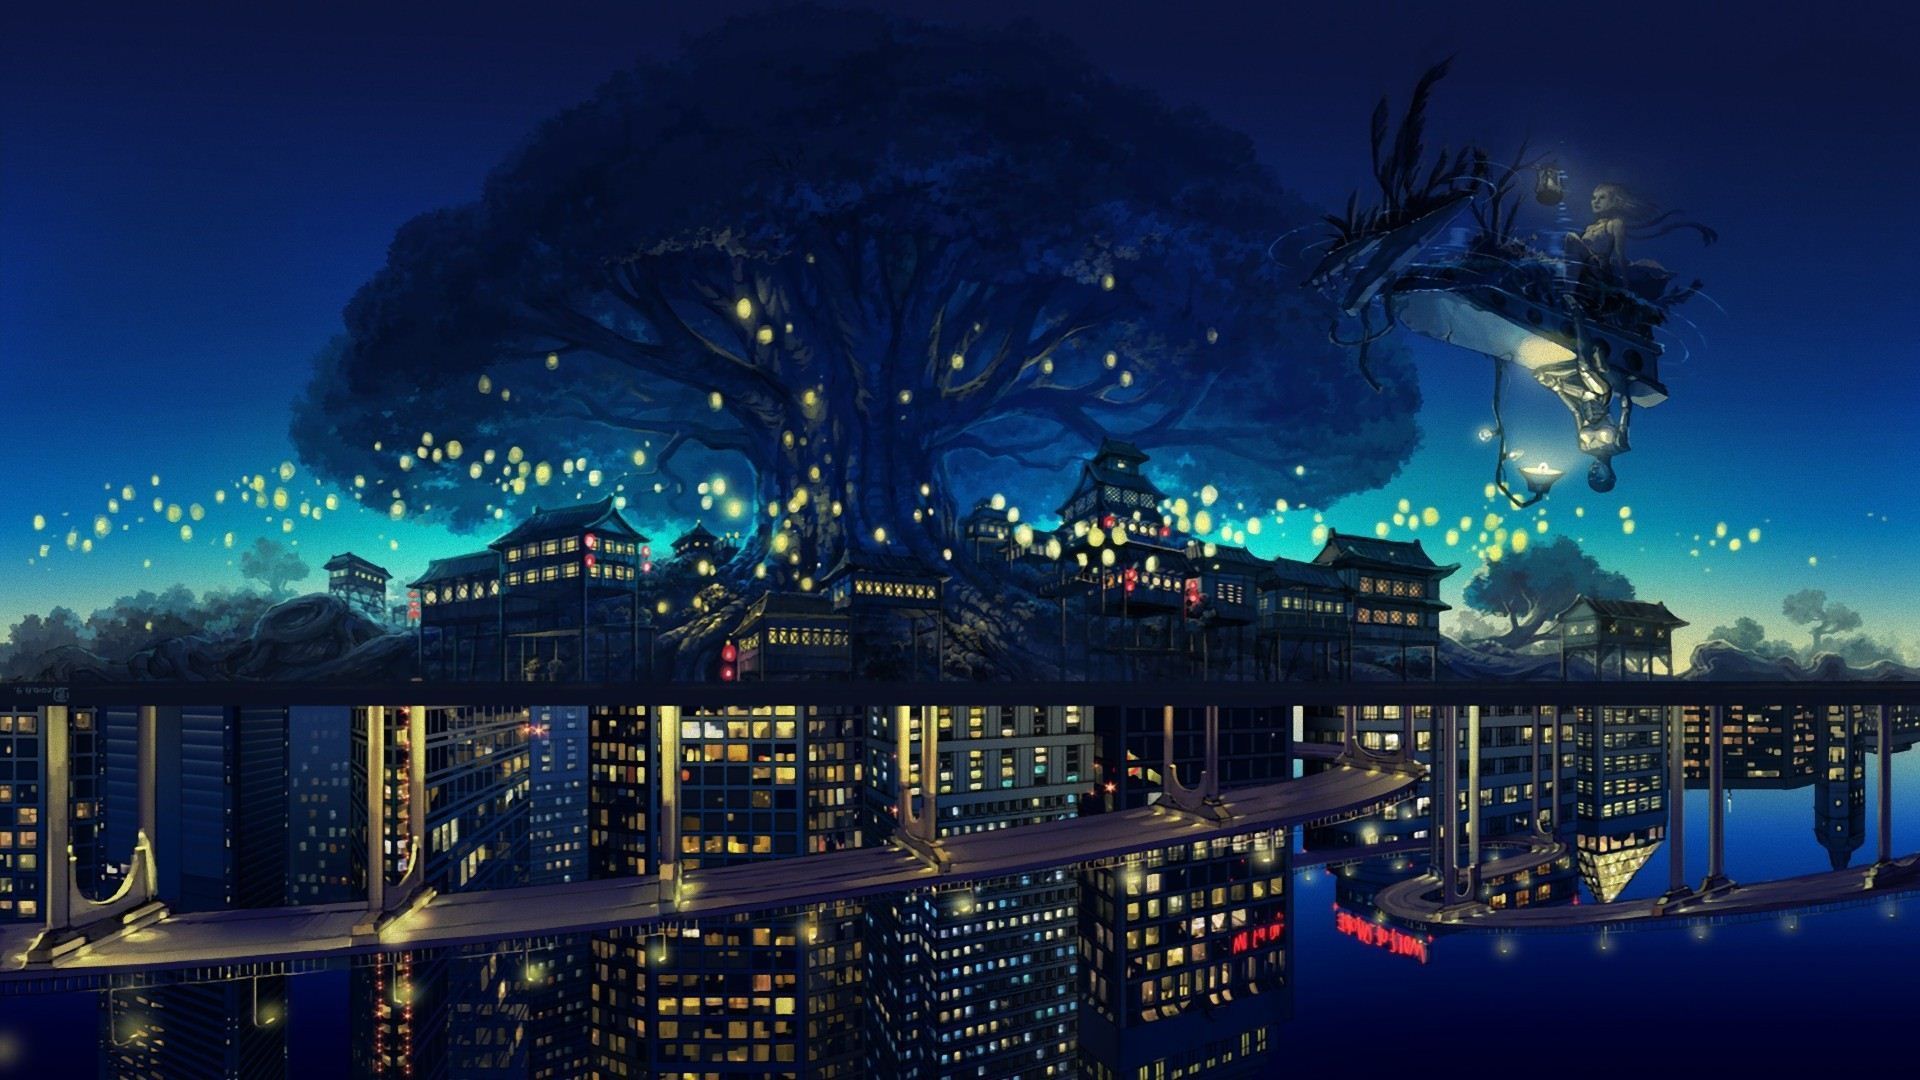 Anime Night Sky Wallpapers - Top Những Hình Ảnh Đẹp